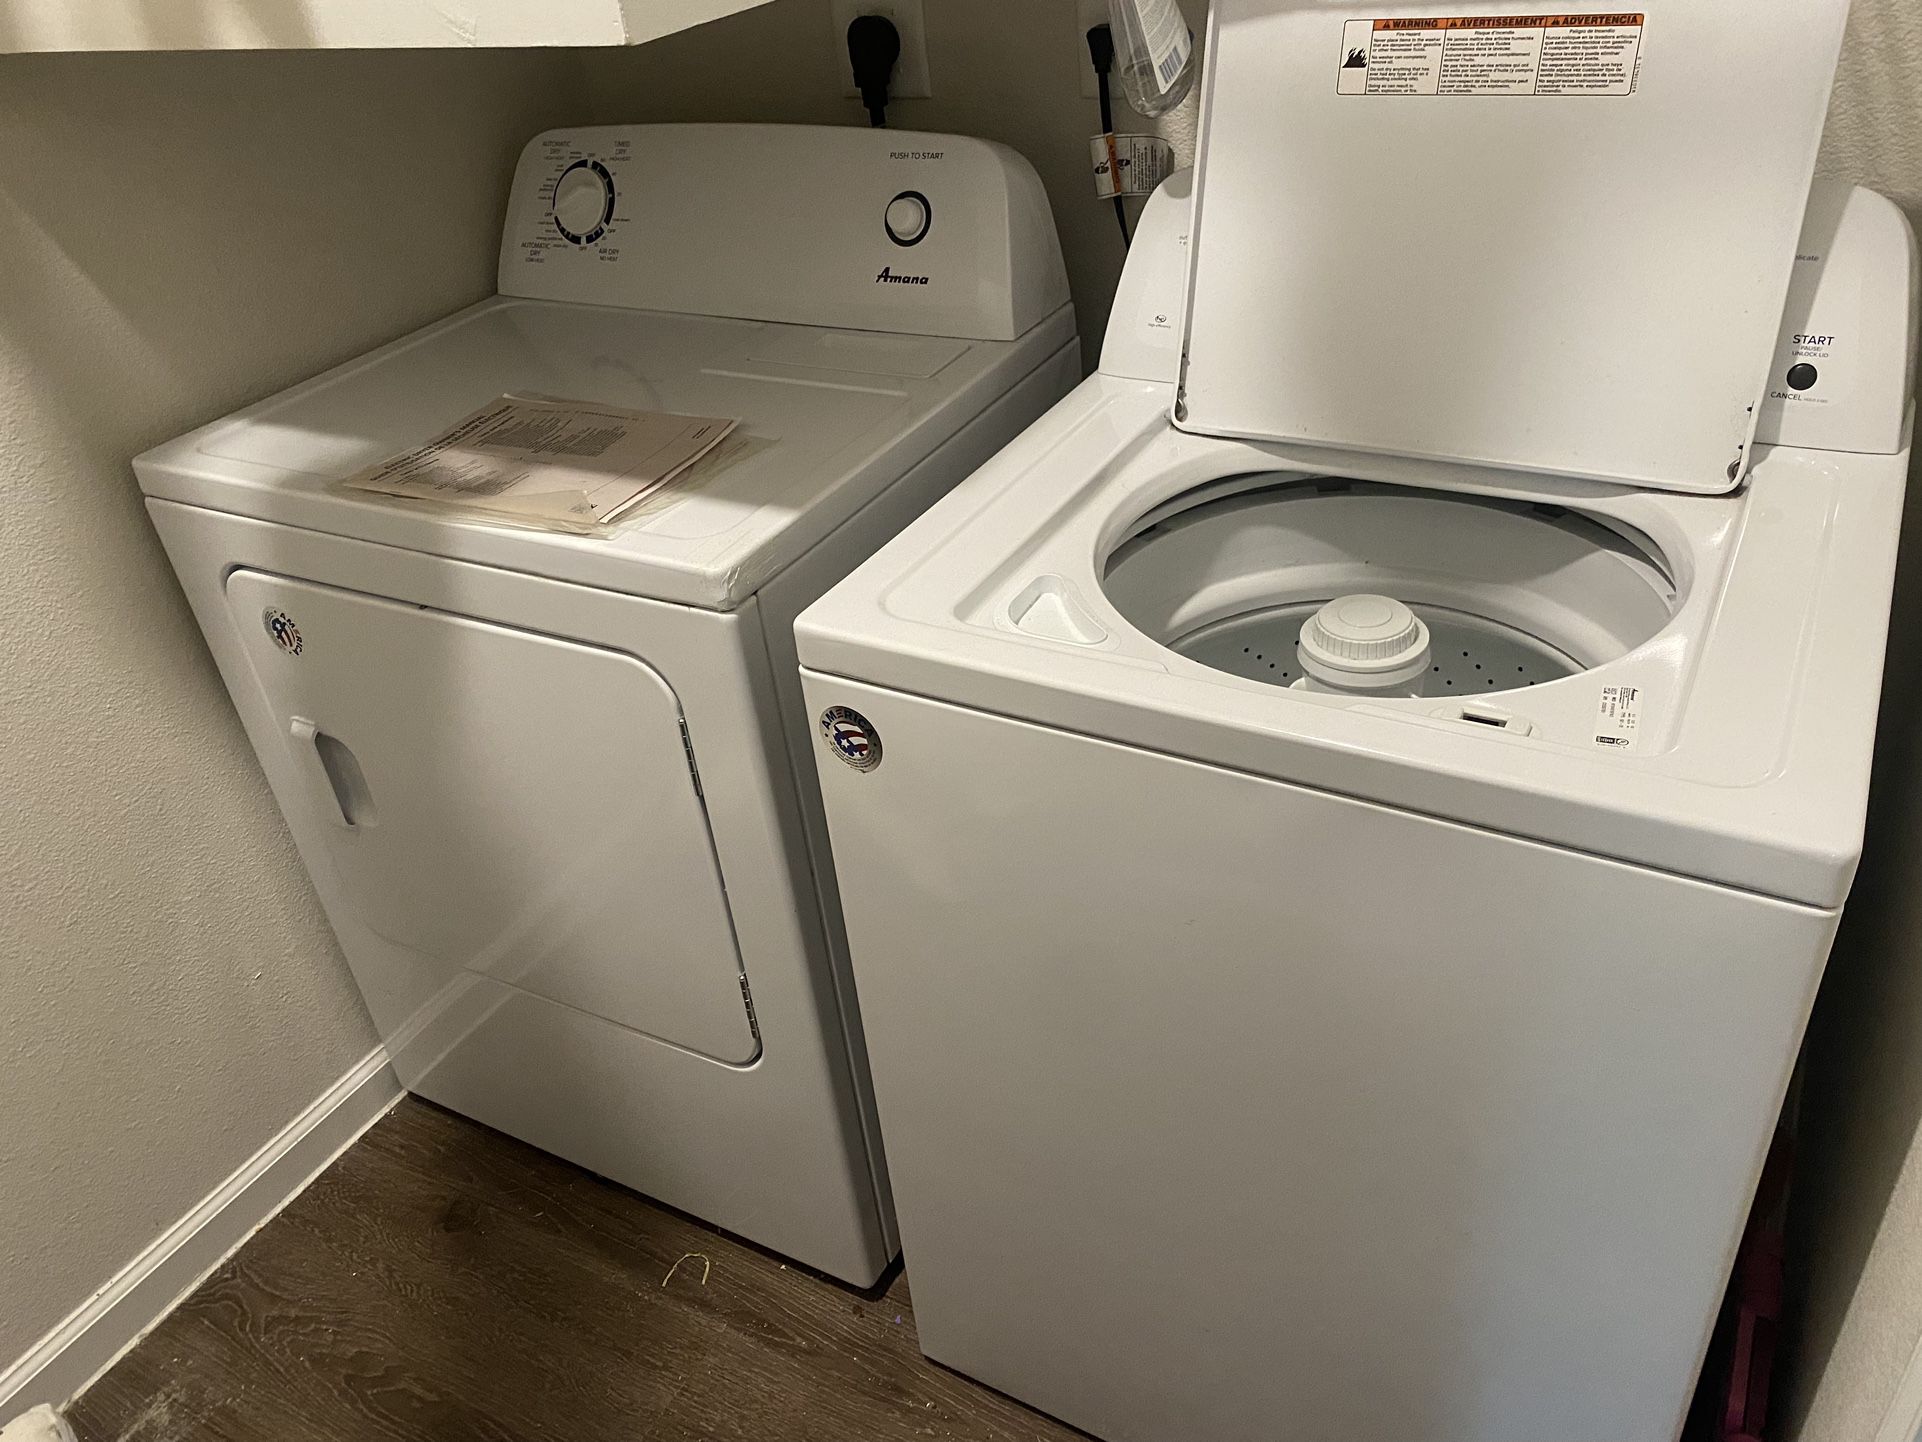 Amana Washer/ Dryer Set